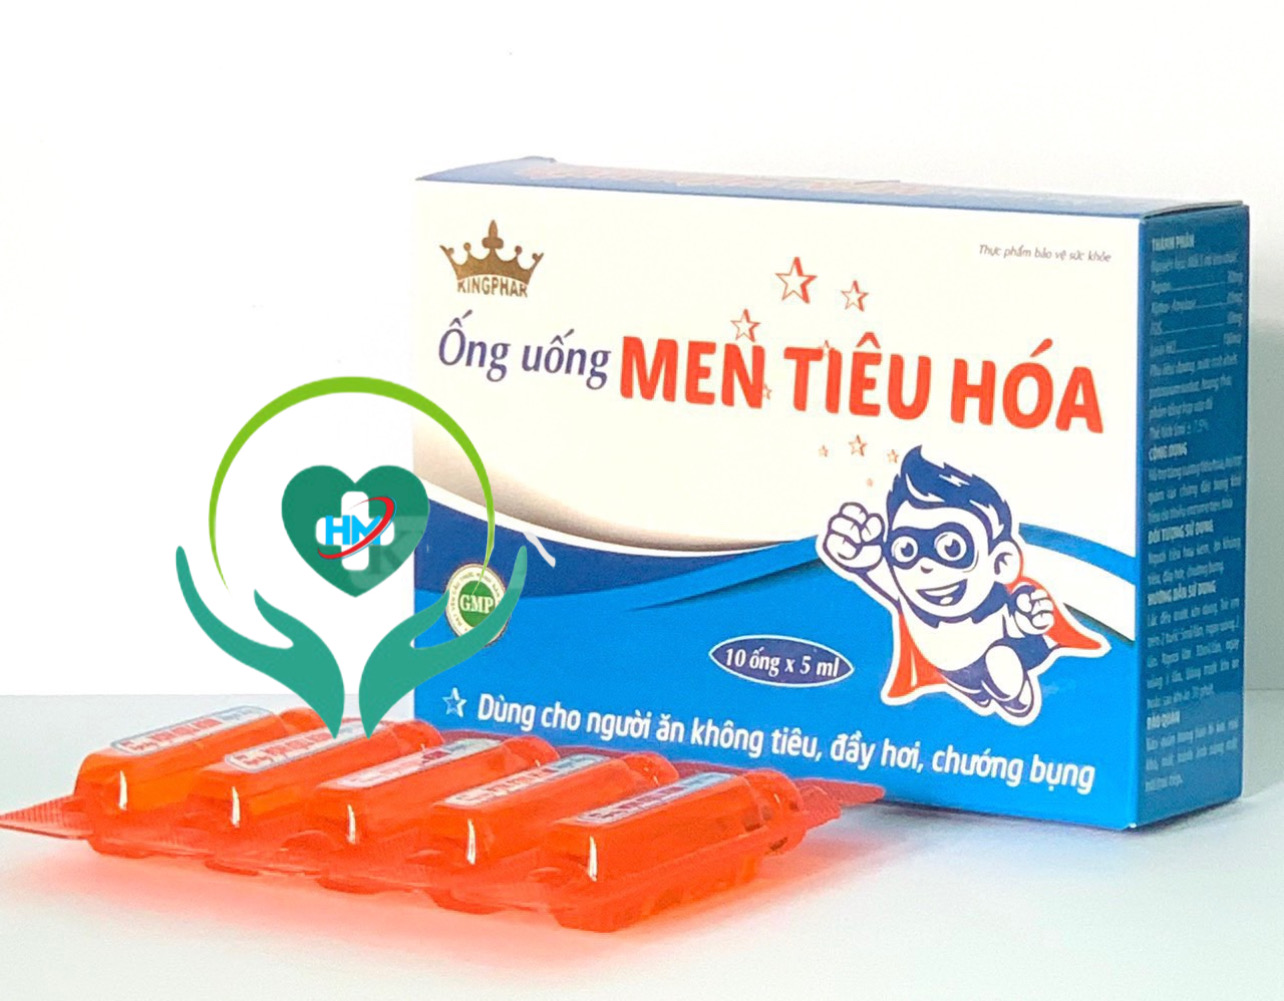 Ống uống Men tiêu hoá Kingphar , hộp 10 ống x 5ml, cân bằng hệ vi sinh đường ruột, chống rối loạn tiêu hoá